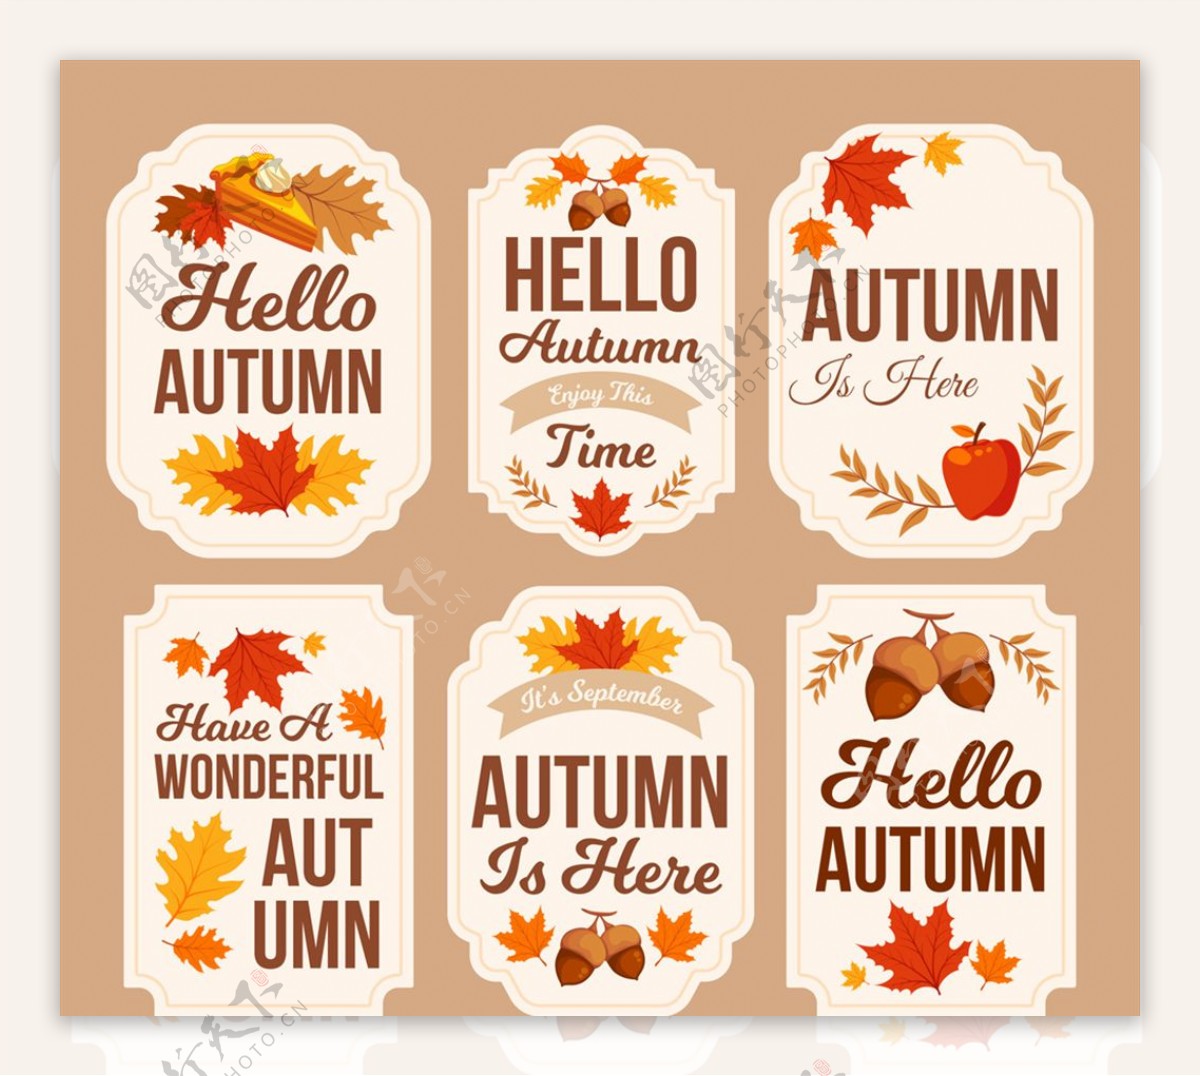 6款彩色秋季标签矢量素材